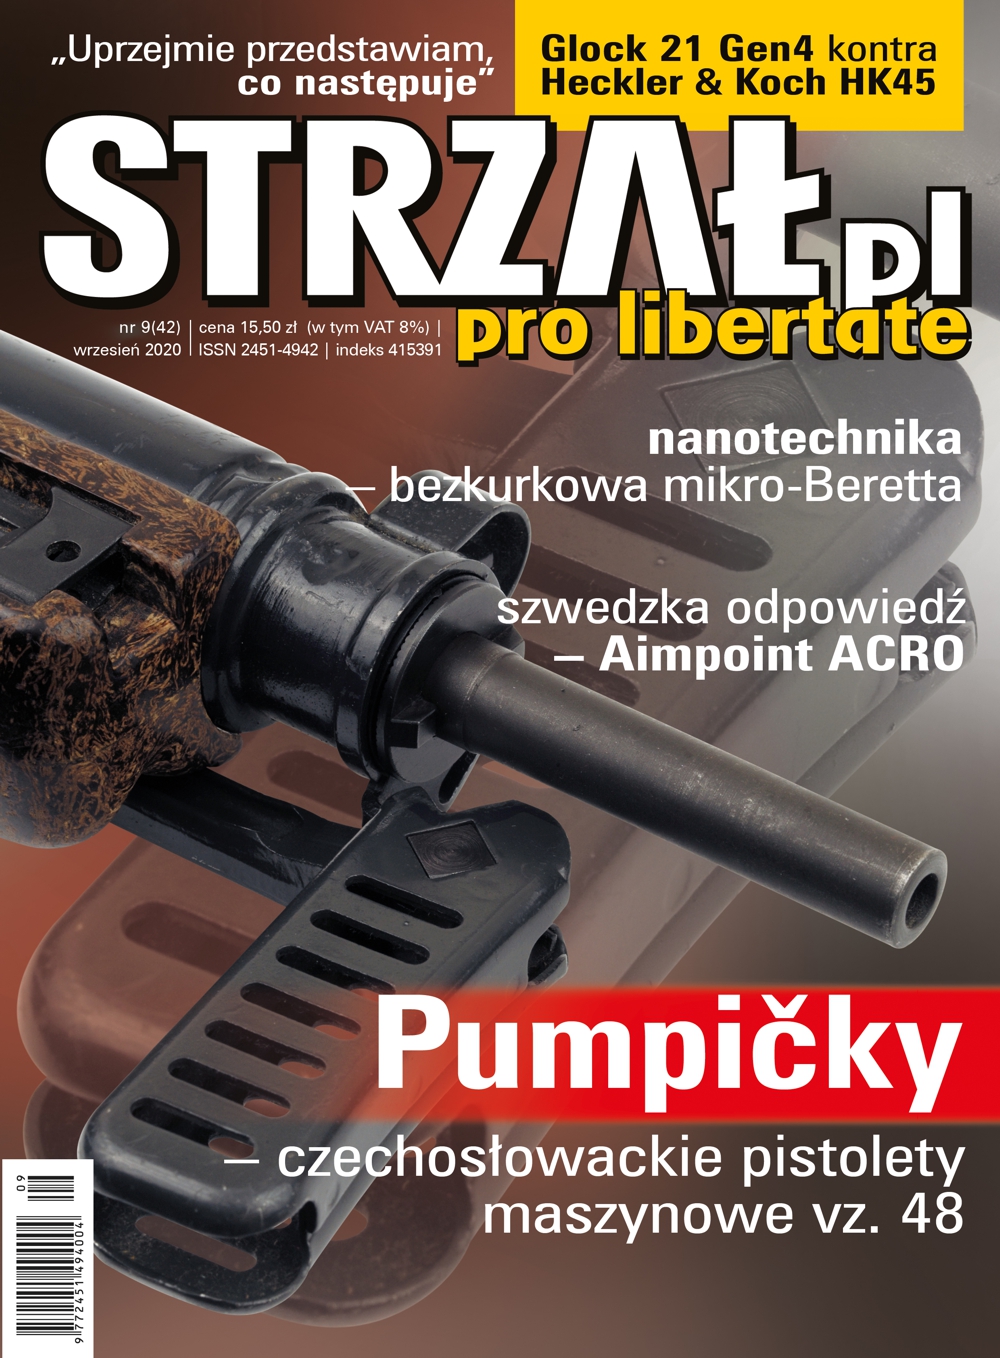 42.STRZAL.pl wrzesień 2020